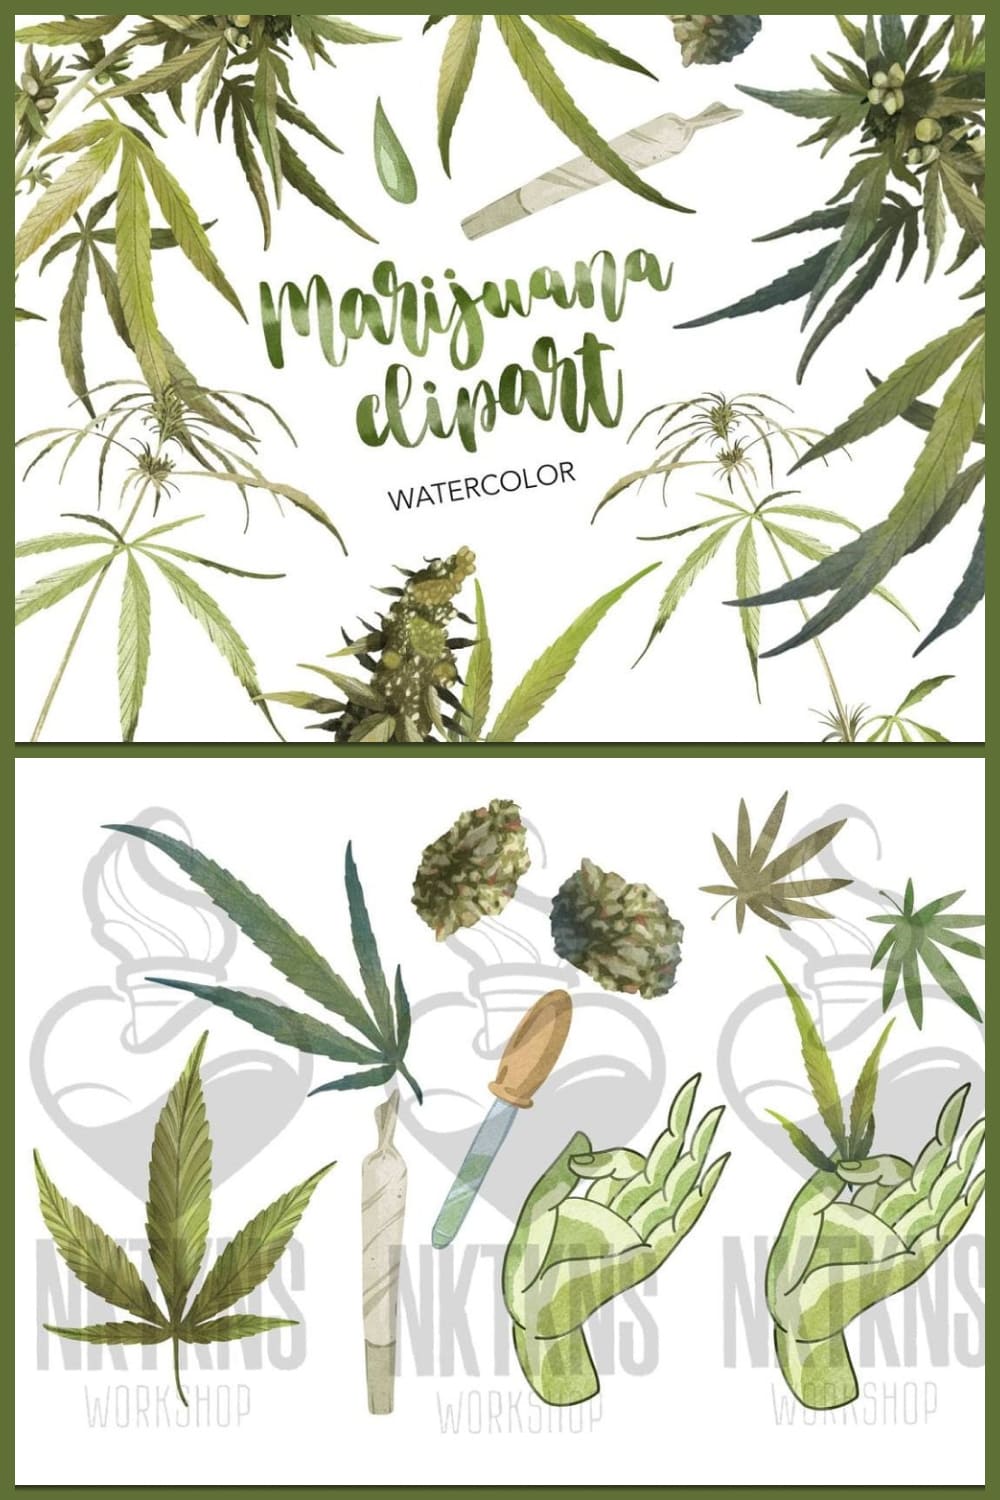 Watercolor Cannabis. Marijuana - Pinterest.